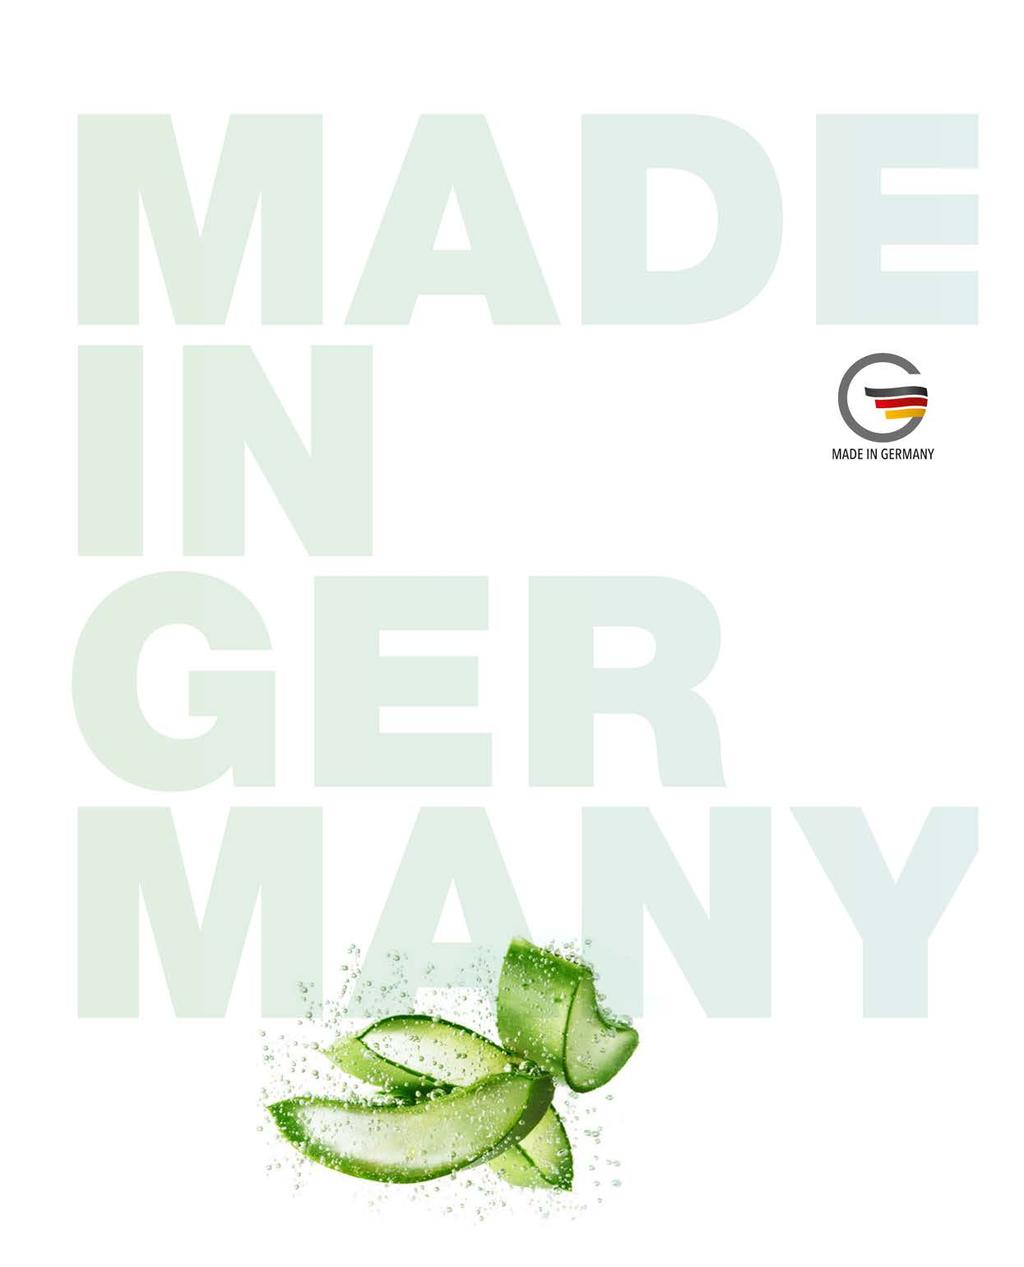 KWALITEIT VAN HET HOOGSTE NIVEAU Made in Germany staat wereldwijd voor de hoogste kwaliteit. Het is onze claim deze kwaliteitsnormen iedere dag met al onze producten te bewijzen.